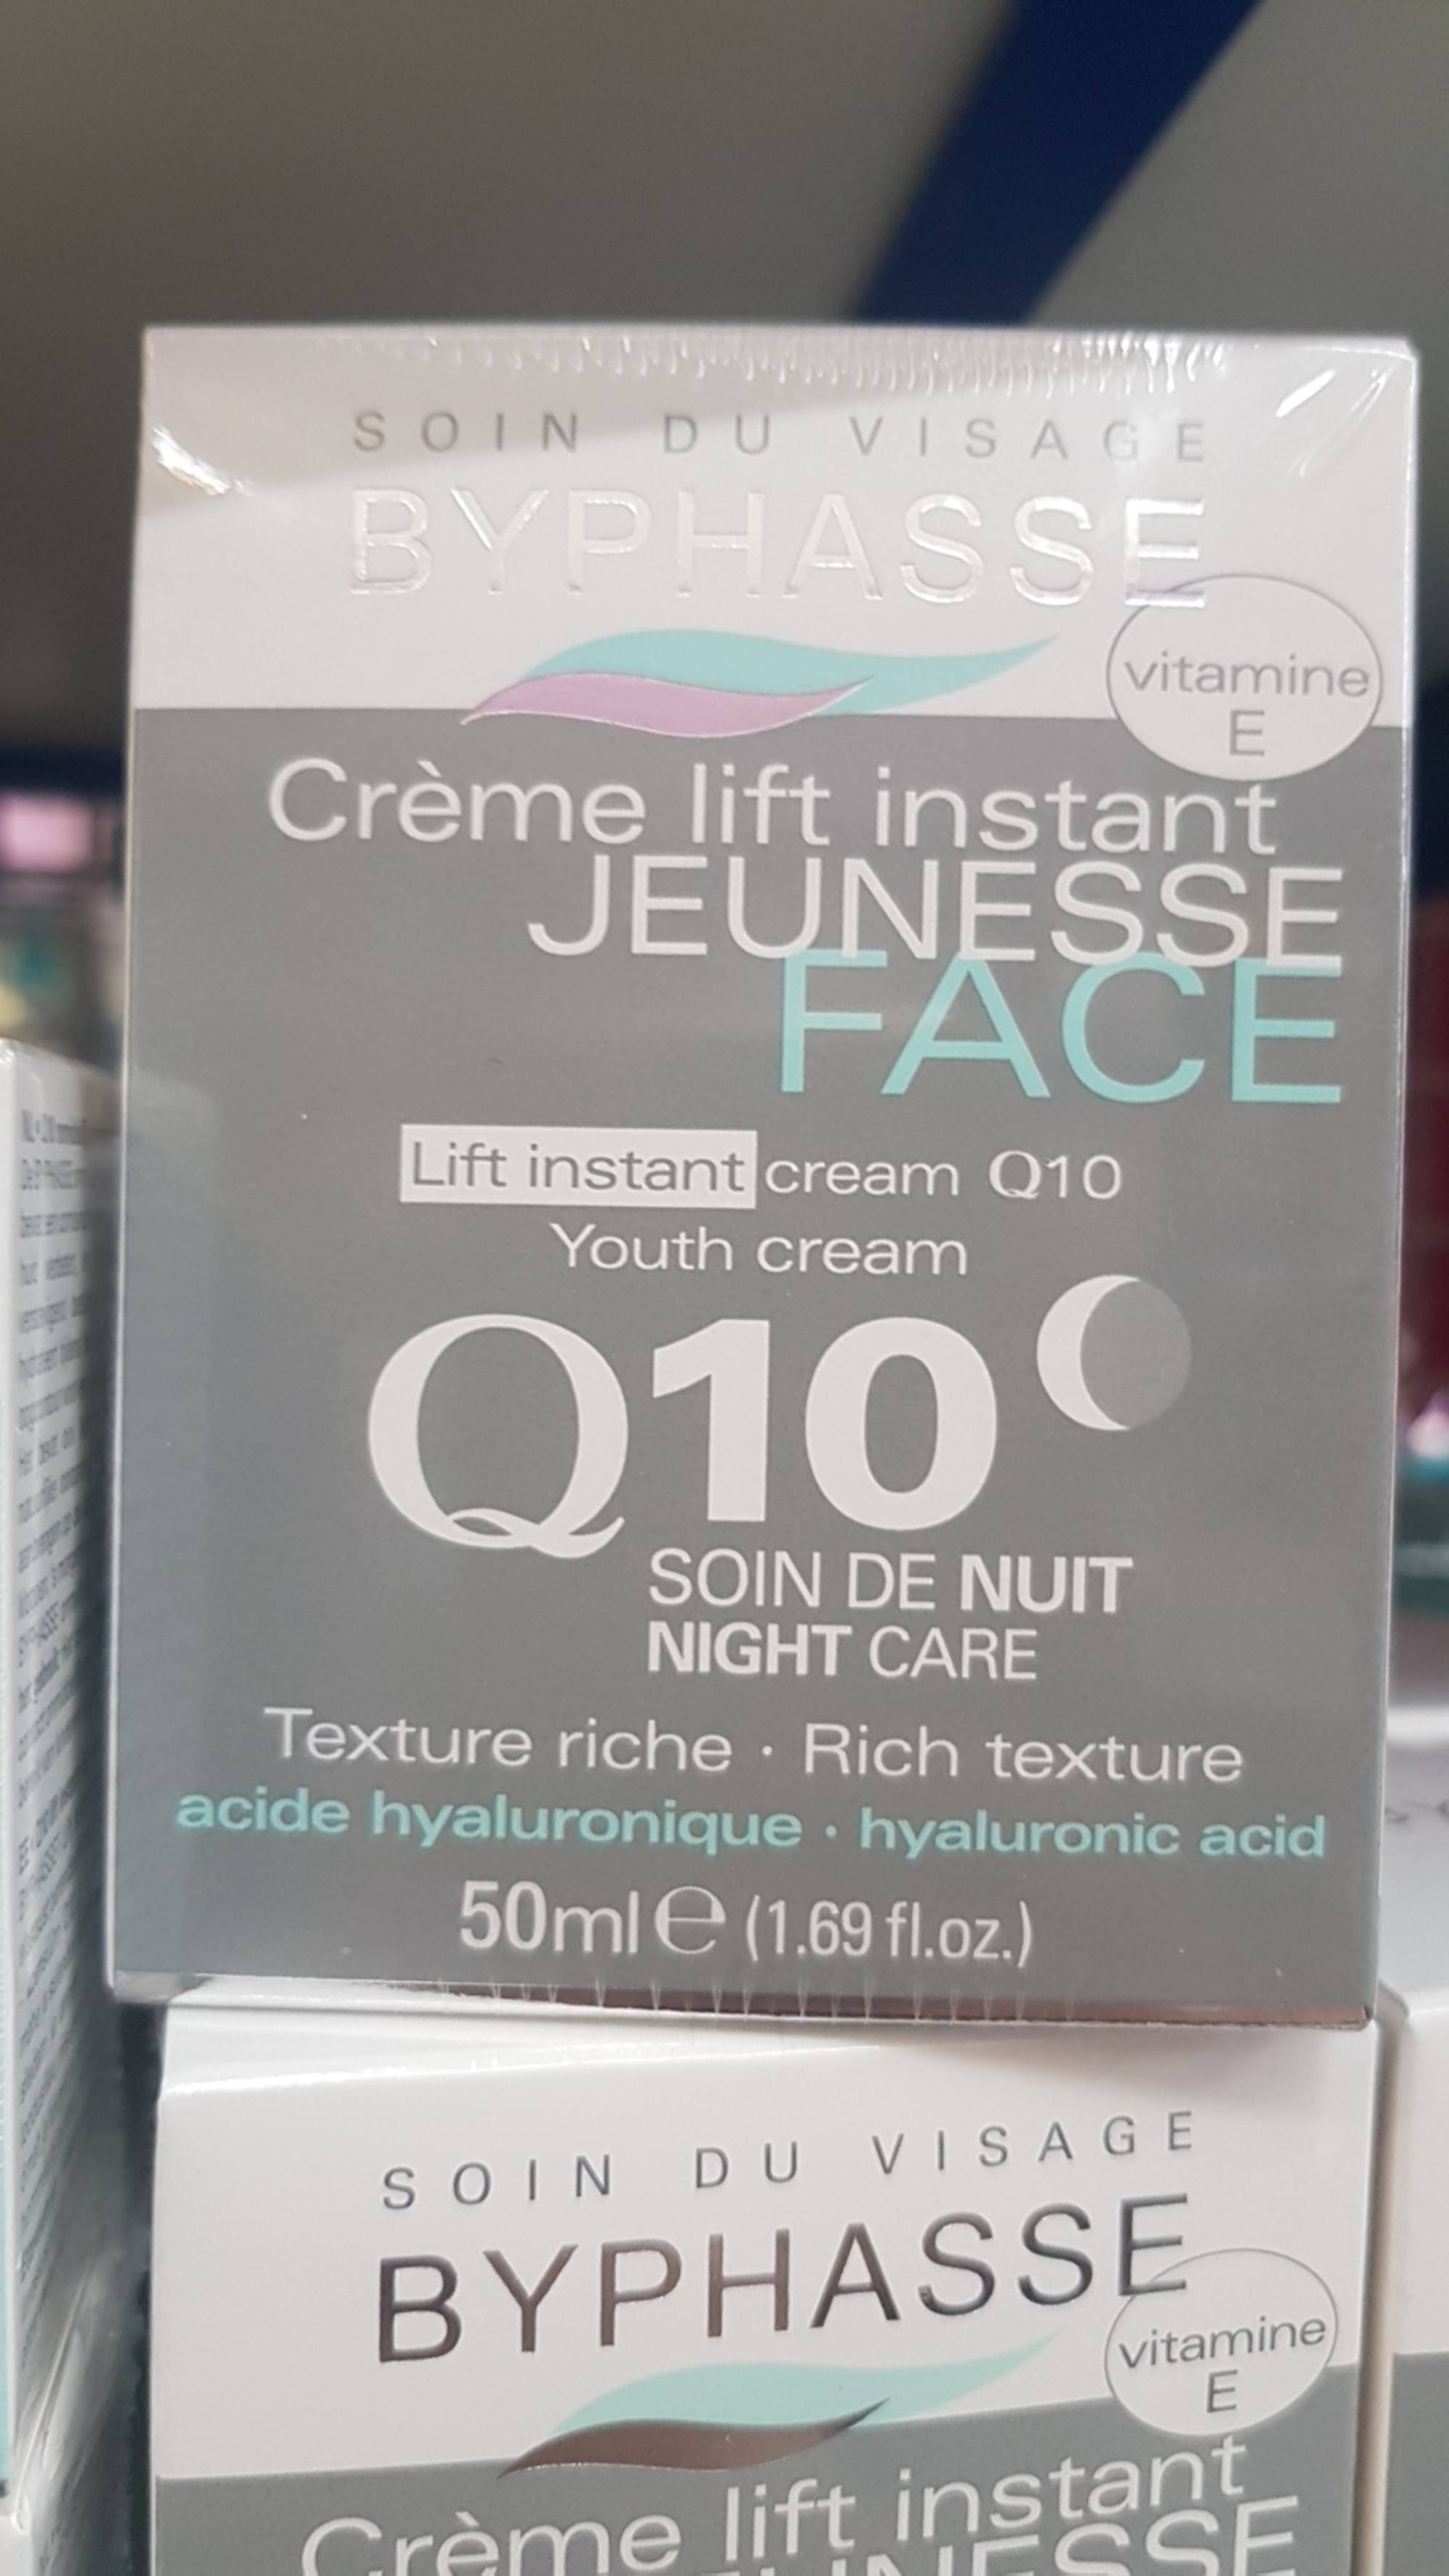 BYPHASSE - Soin du visage - Crème lift instant jeunesse - Q10 soin de nuit